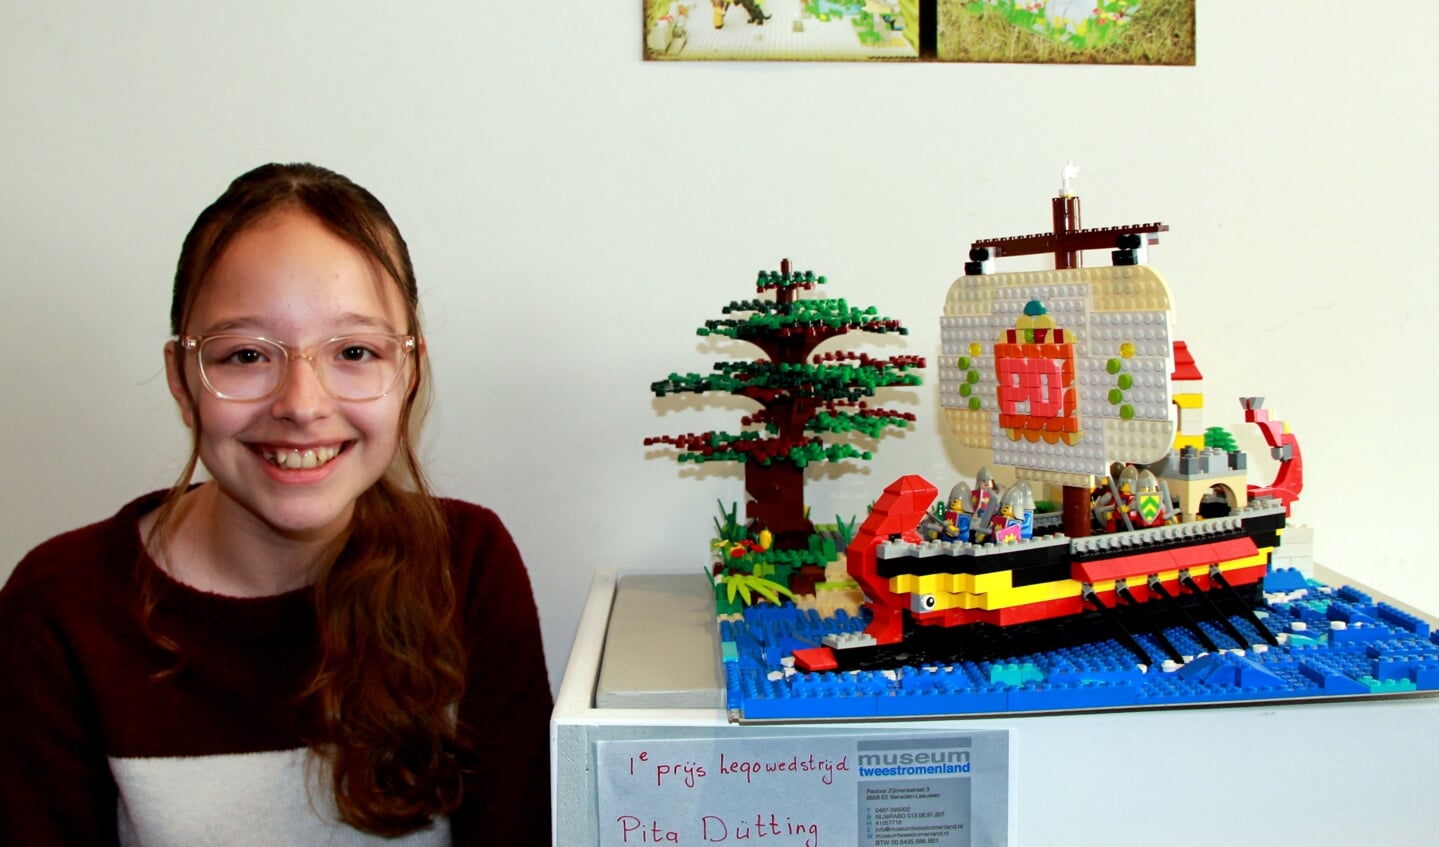 Pita Dutting wint de Legowedstrijd van museum Tweestromenland